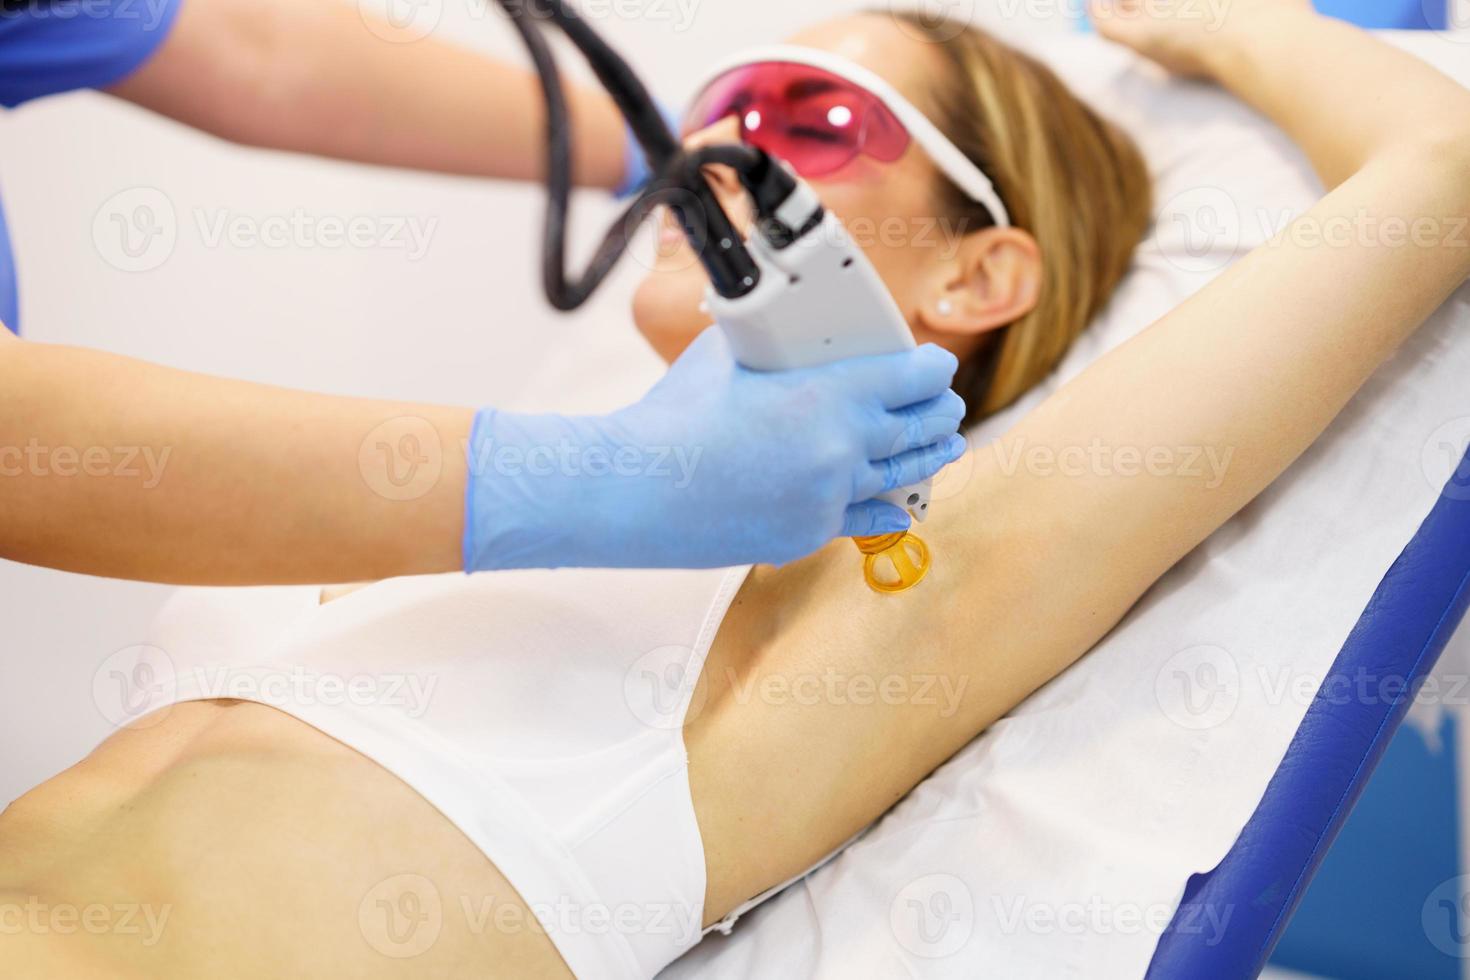 donna che riceve la depilazione laser ascellare in un centro di bellezza. foto